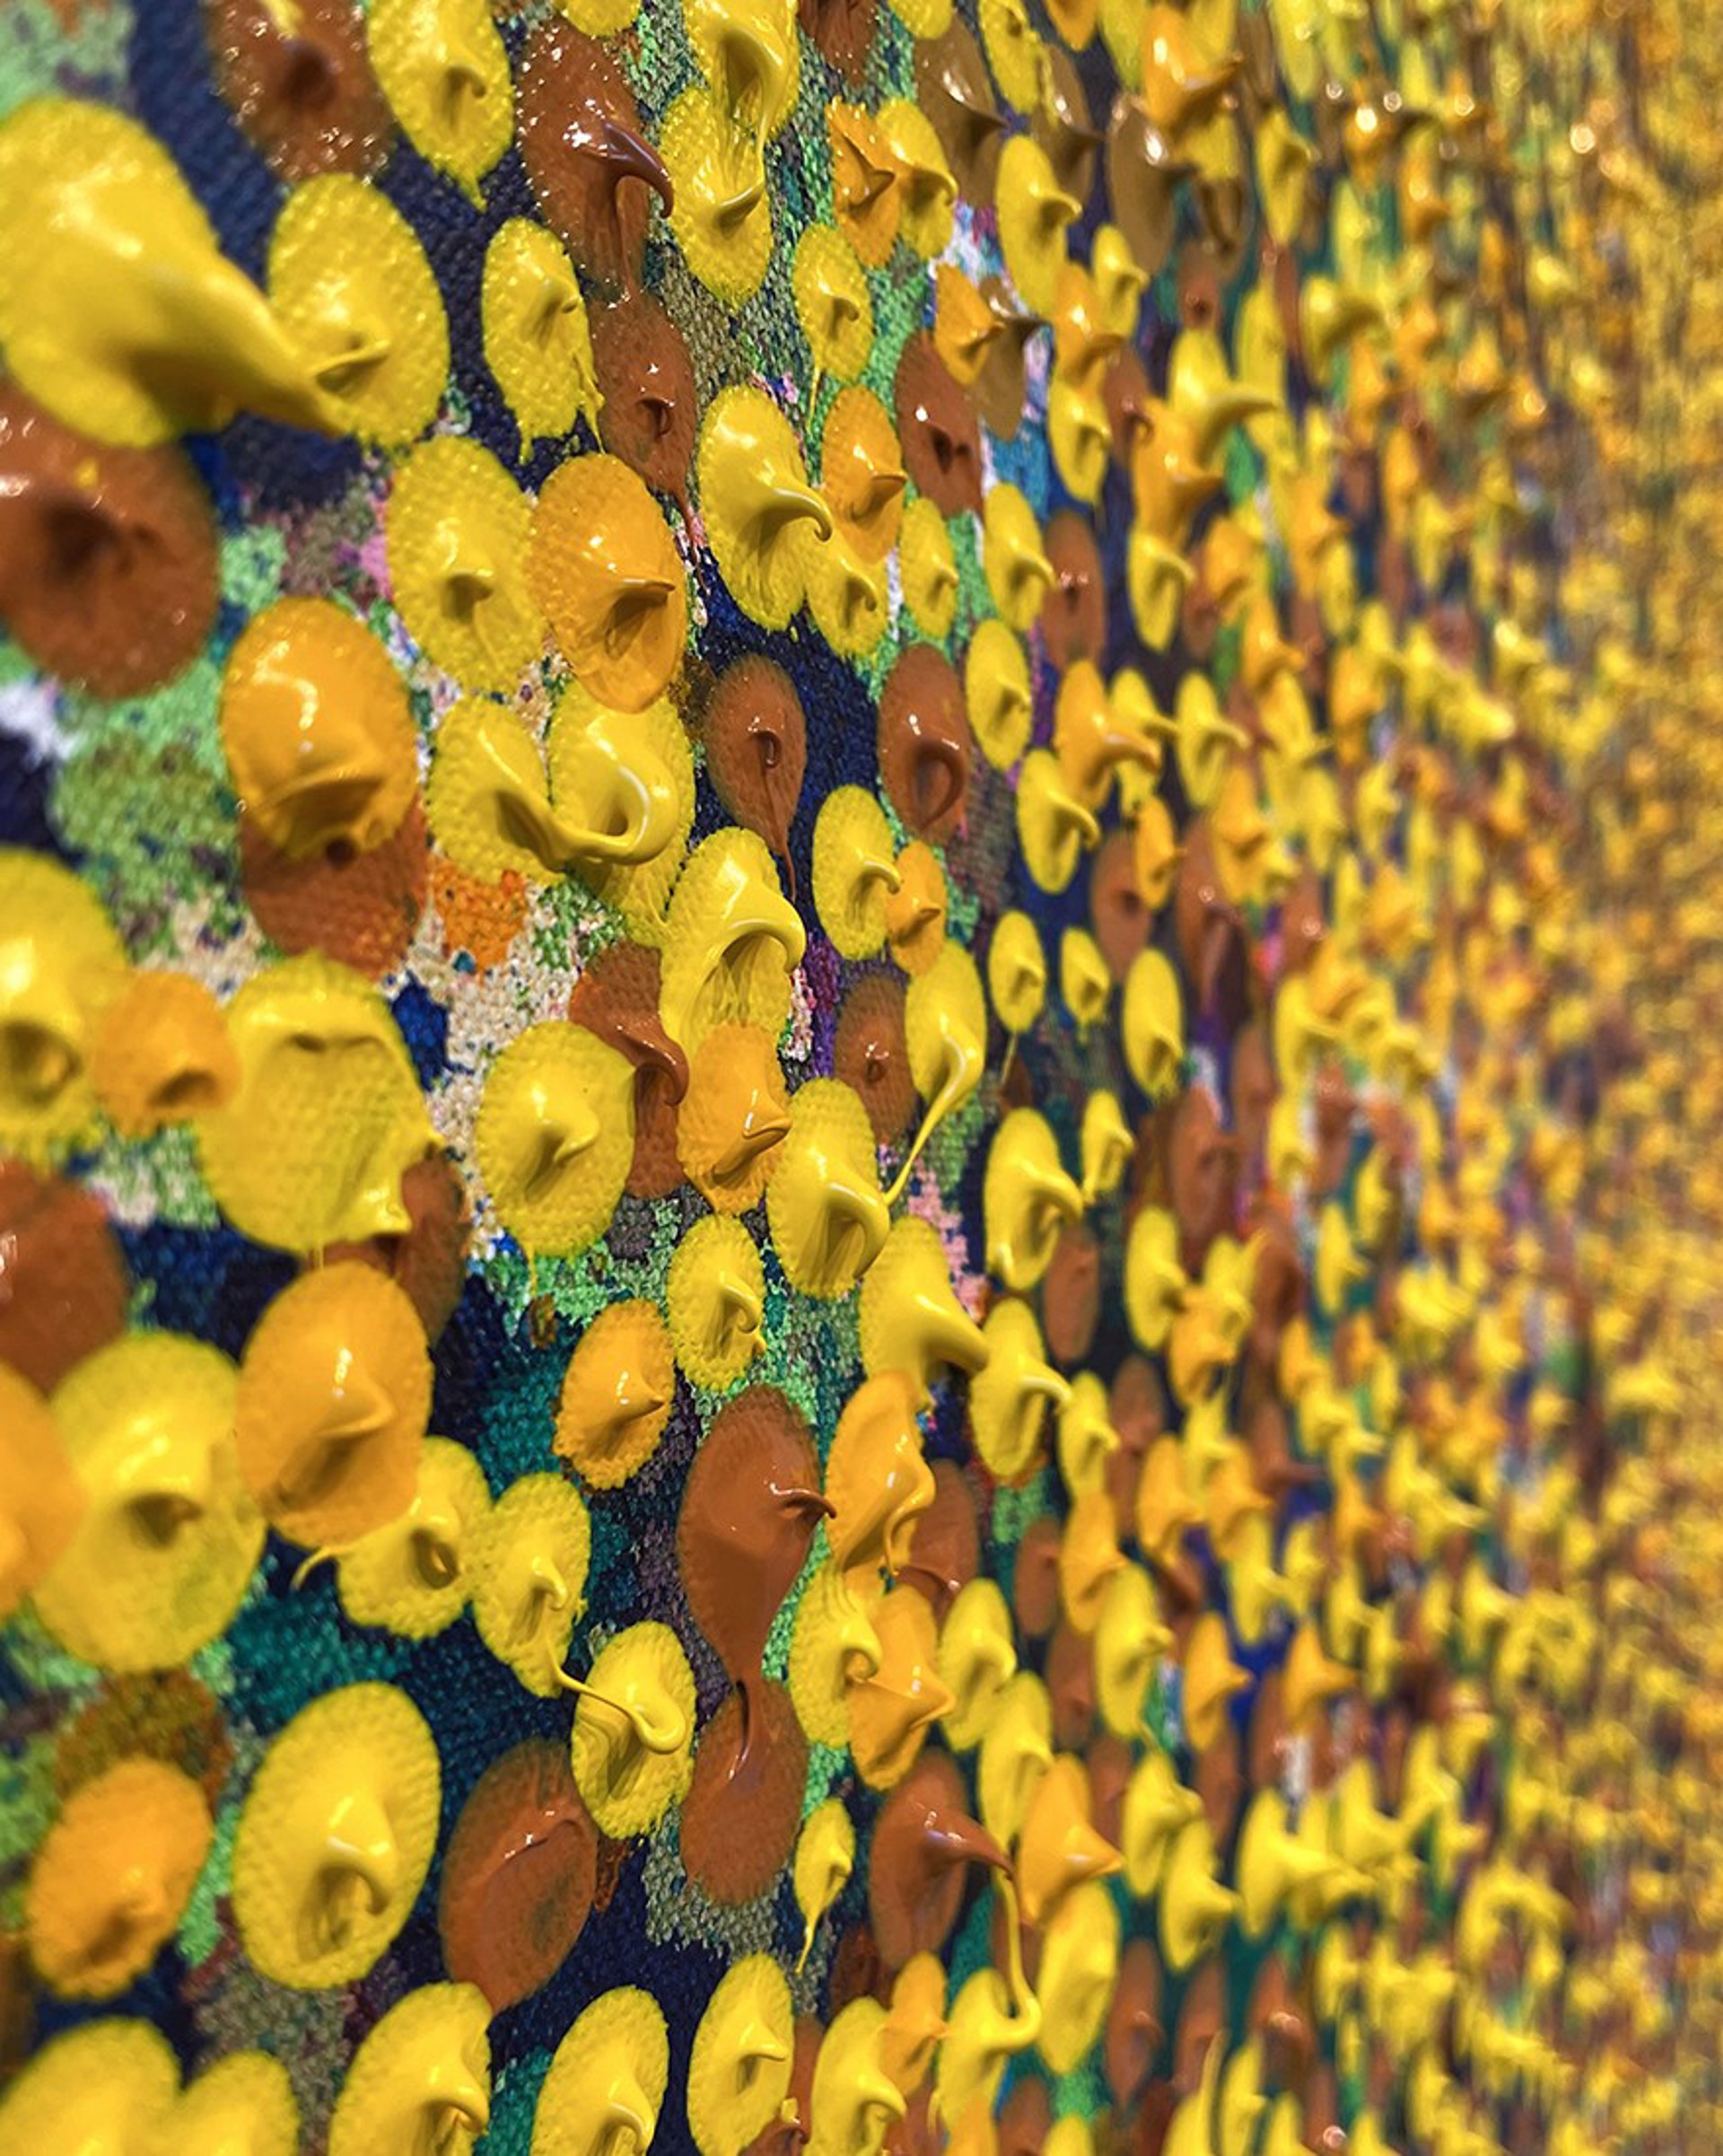 Yellows in Autumn by Marcio Díaz